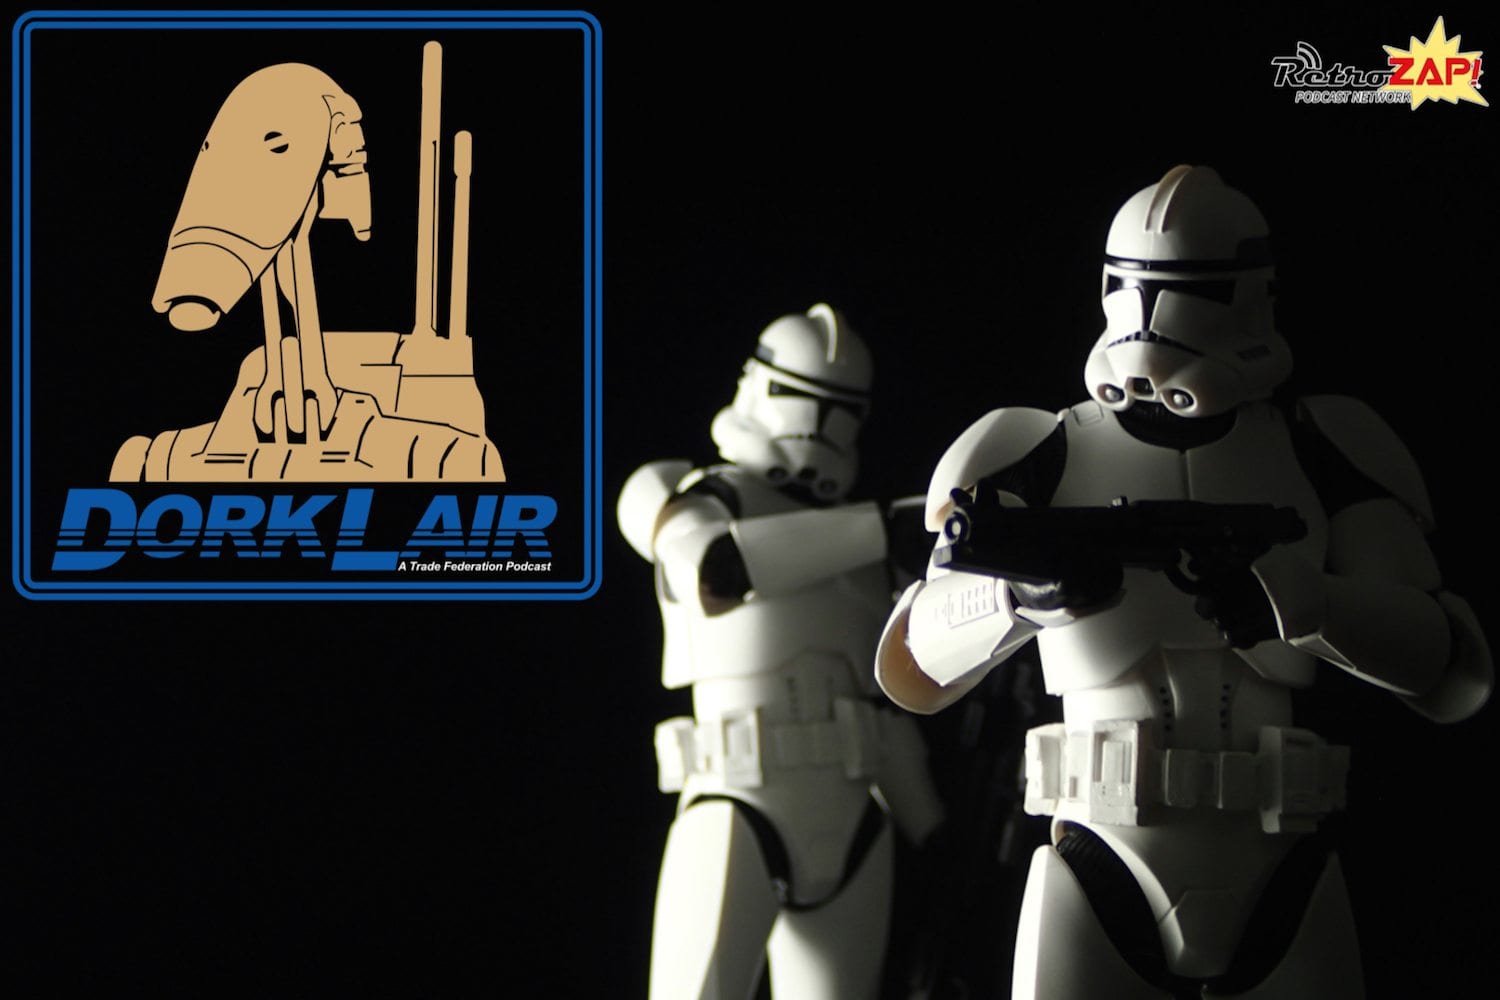 figuarts clone trooper